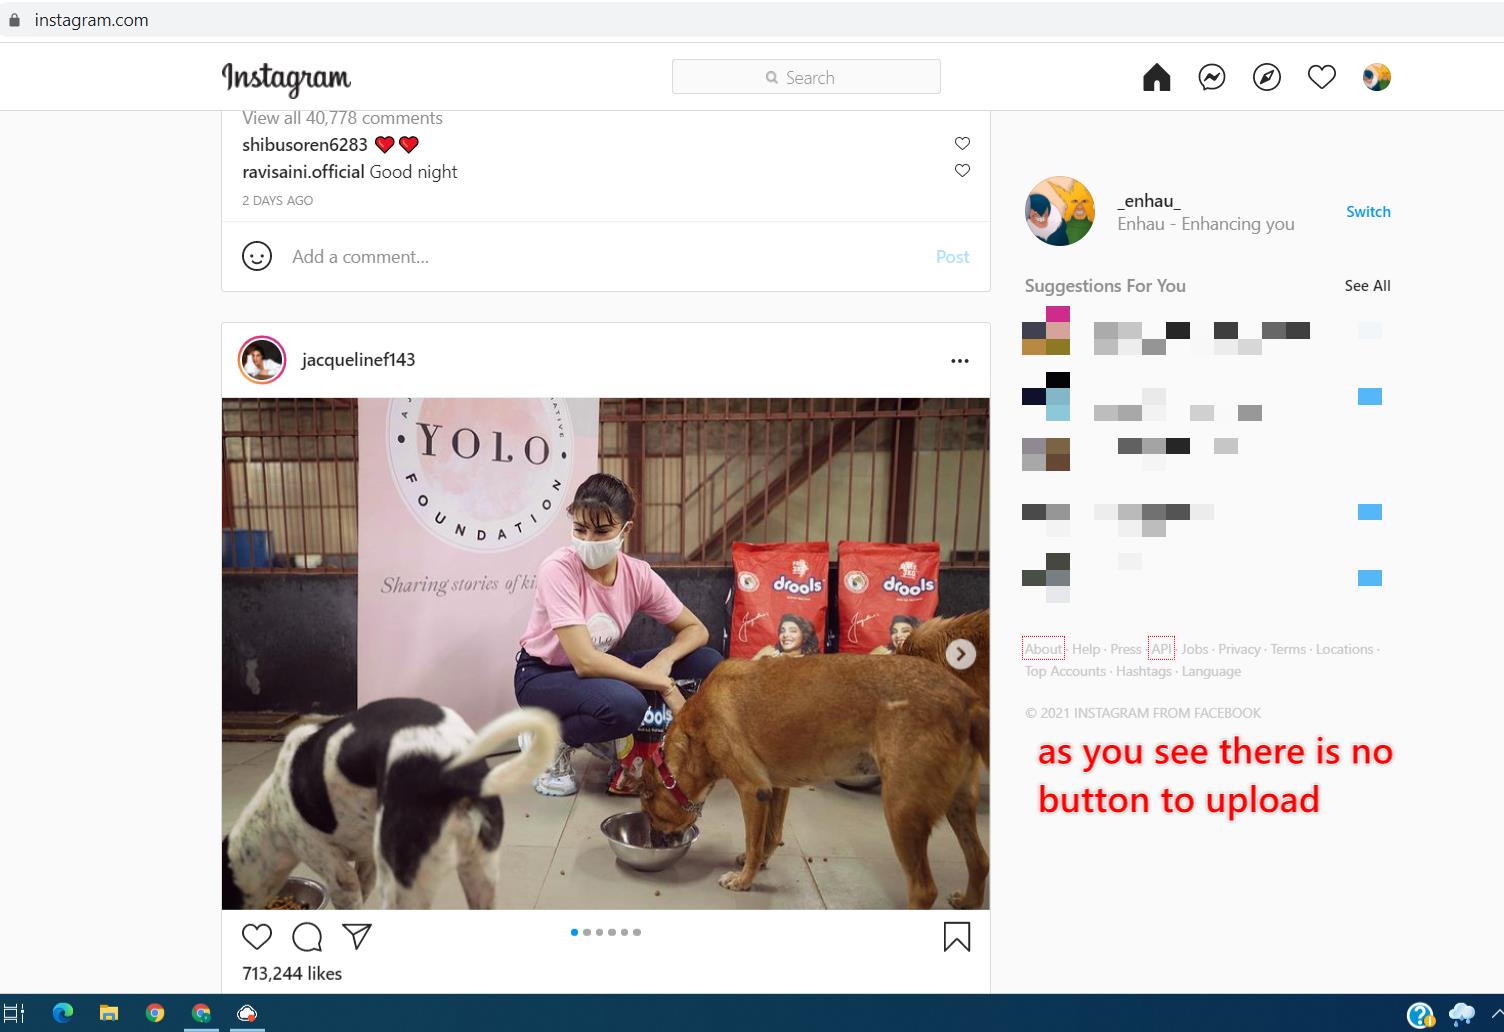 steps to upload images on Instagram